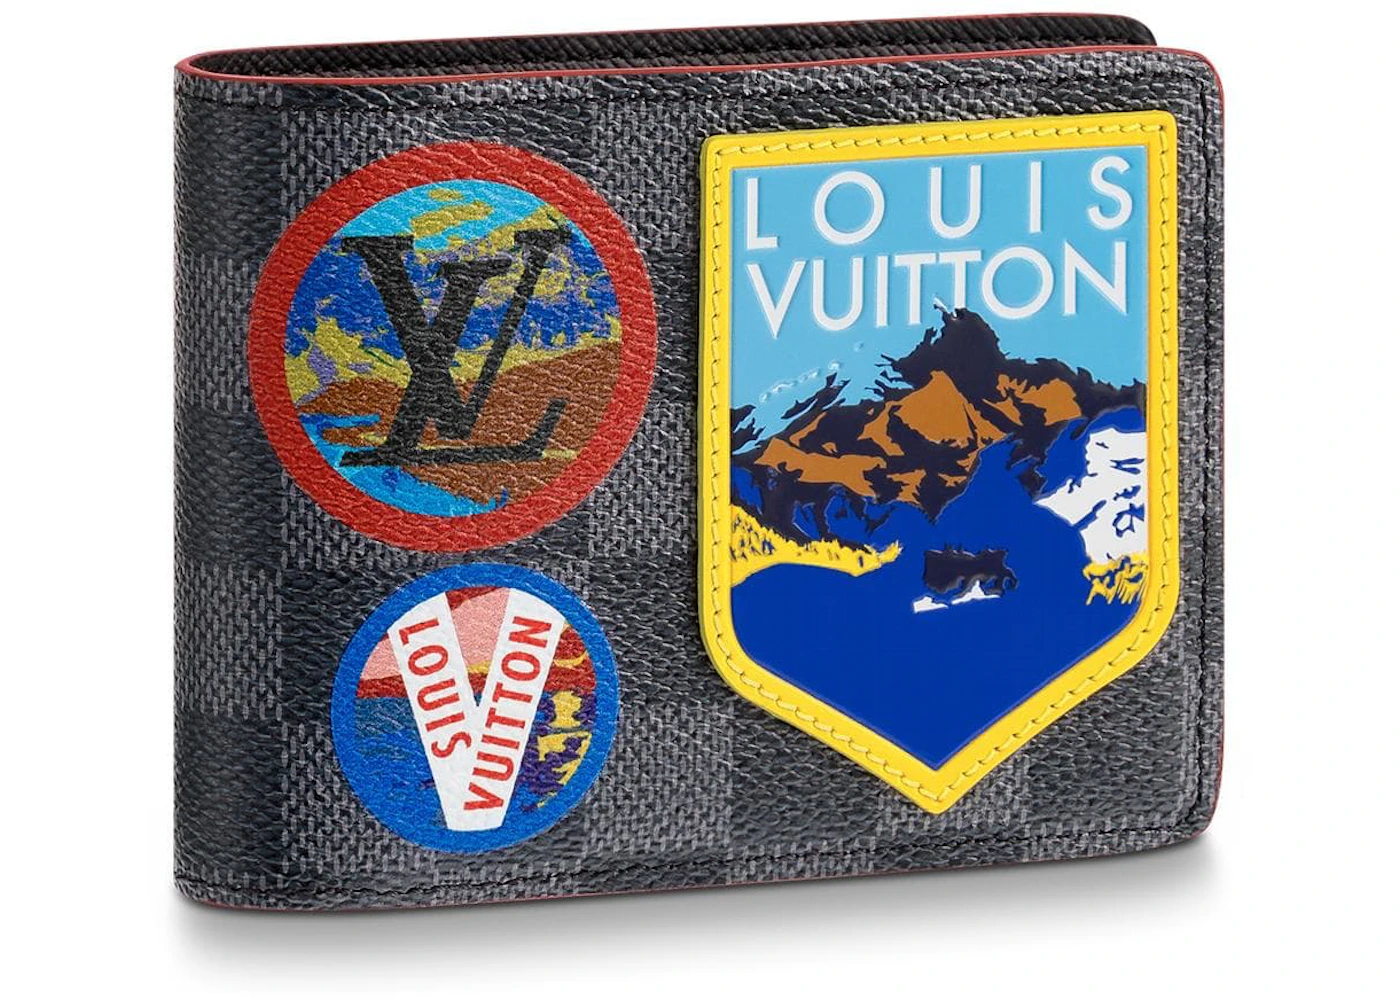 Louis Vuitton lv multiple man short wallet